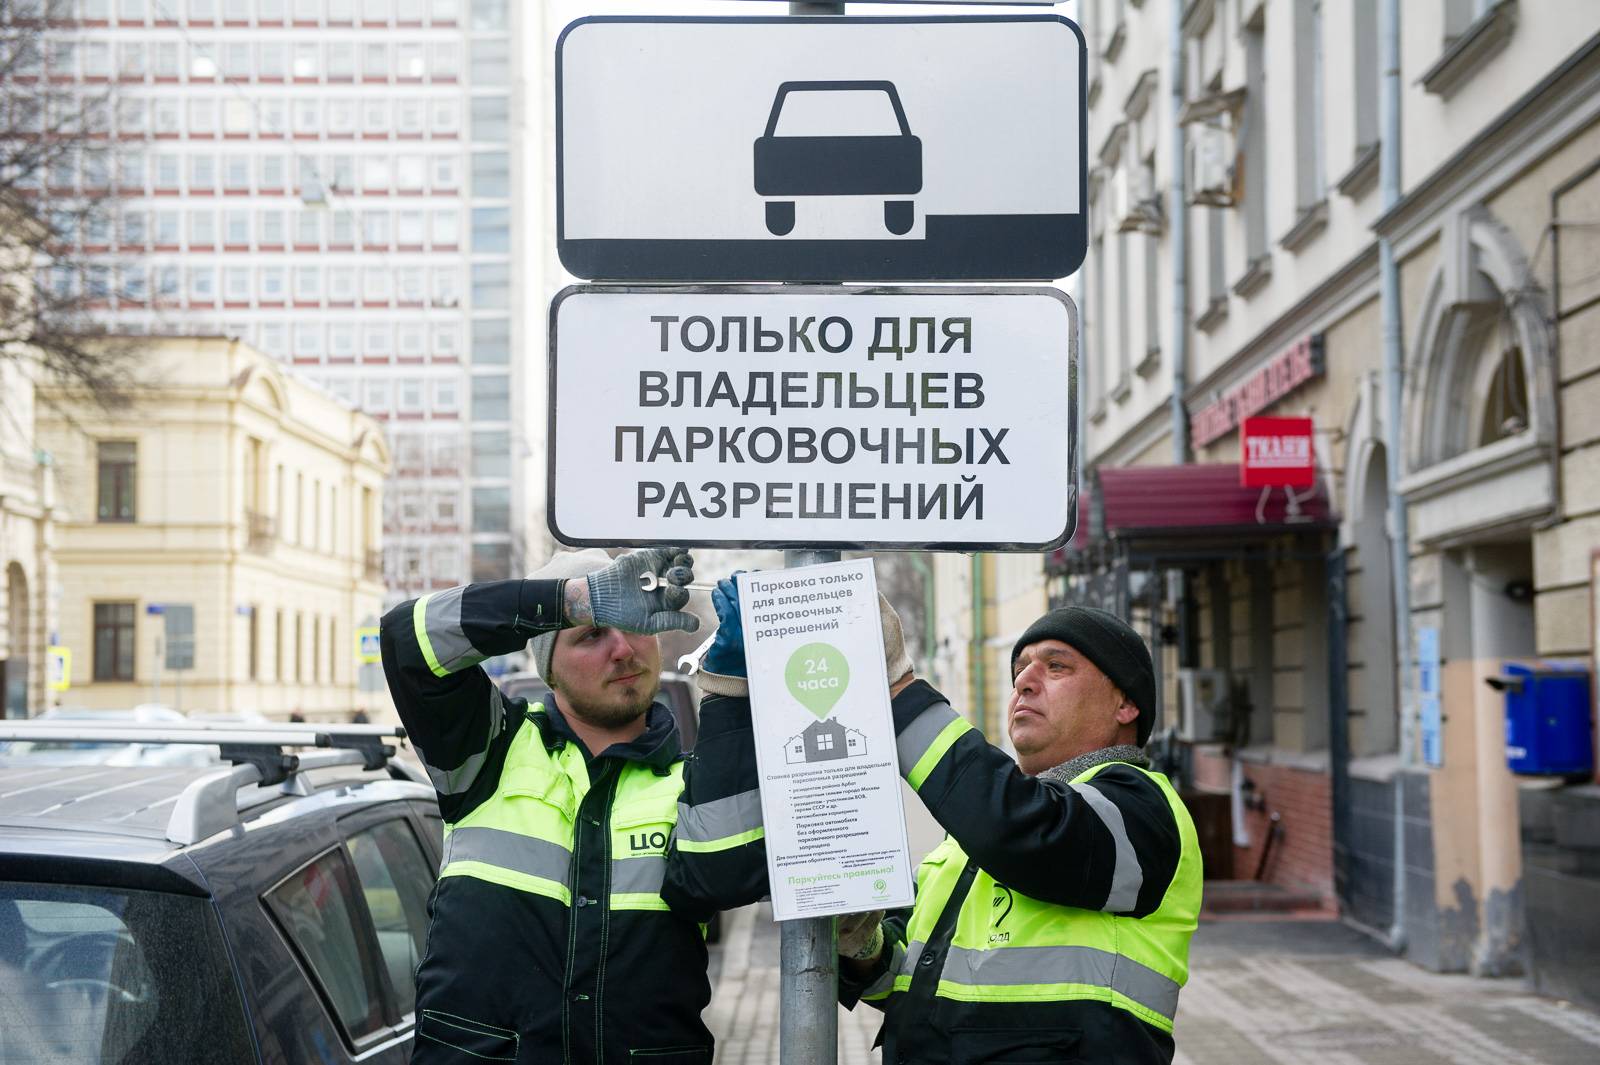 Как получить парковочное разрешение резидента. список необходимых документов для получения парковочного разрешения резидента :: businessman.ru